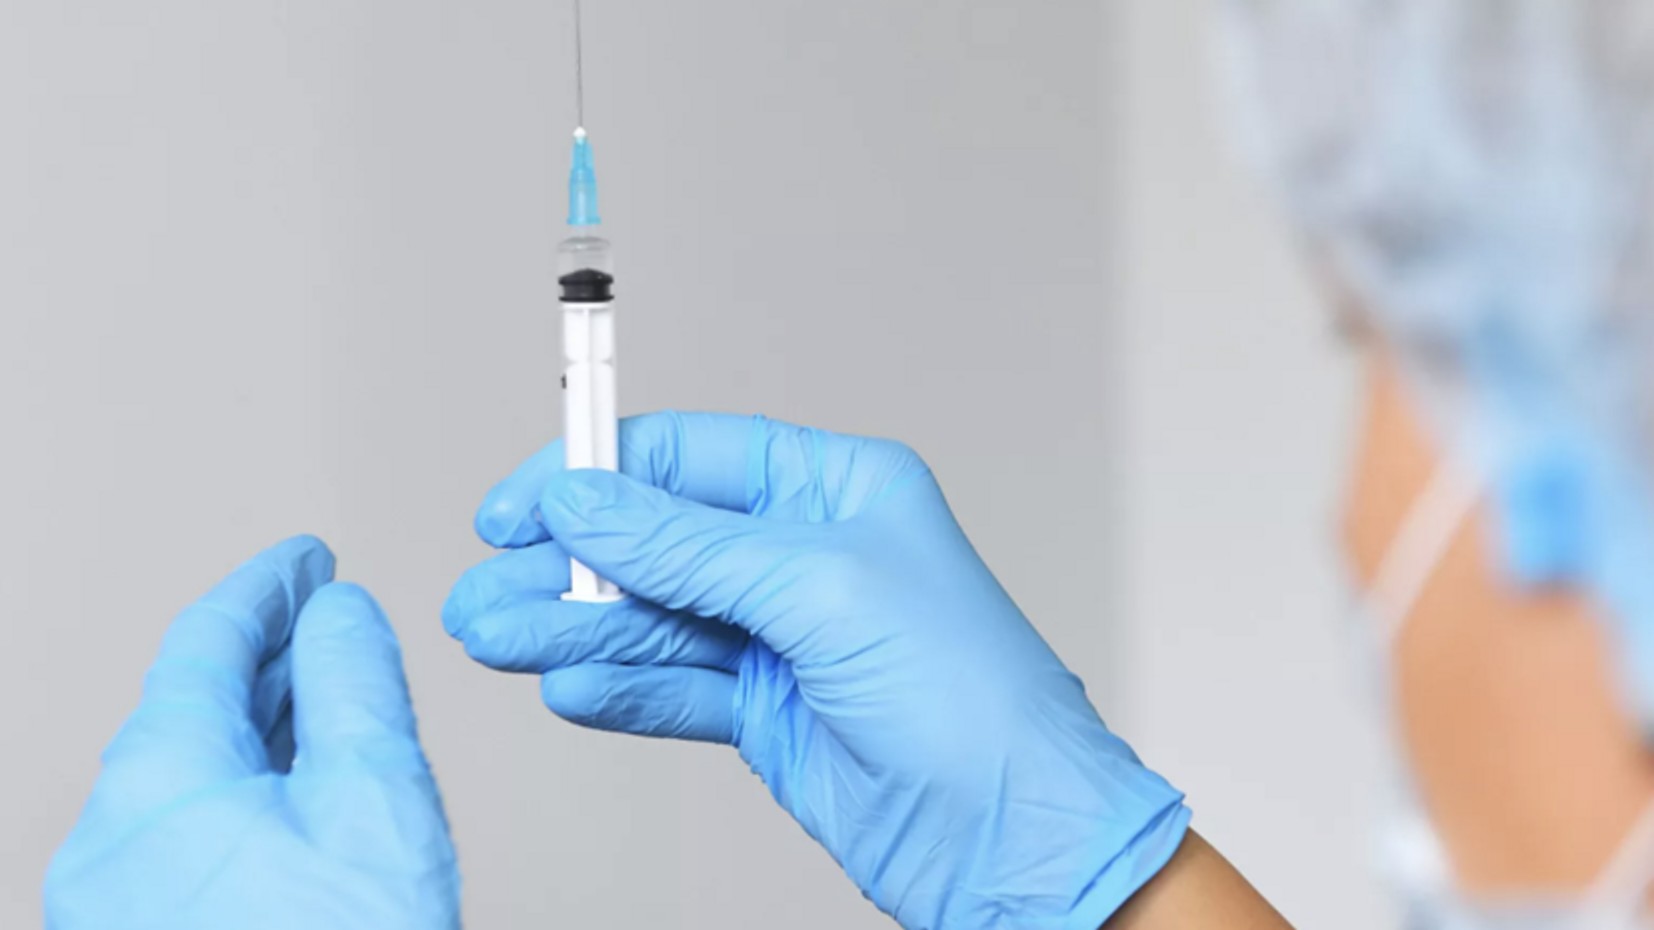 Масову COVID-вакцинацію хочуть запустити по всій РФ до кінця тижня